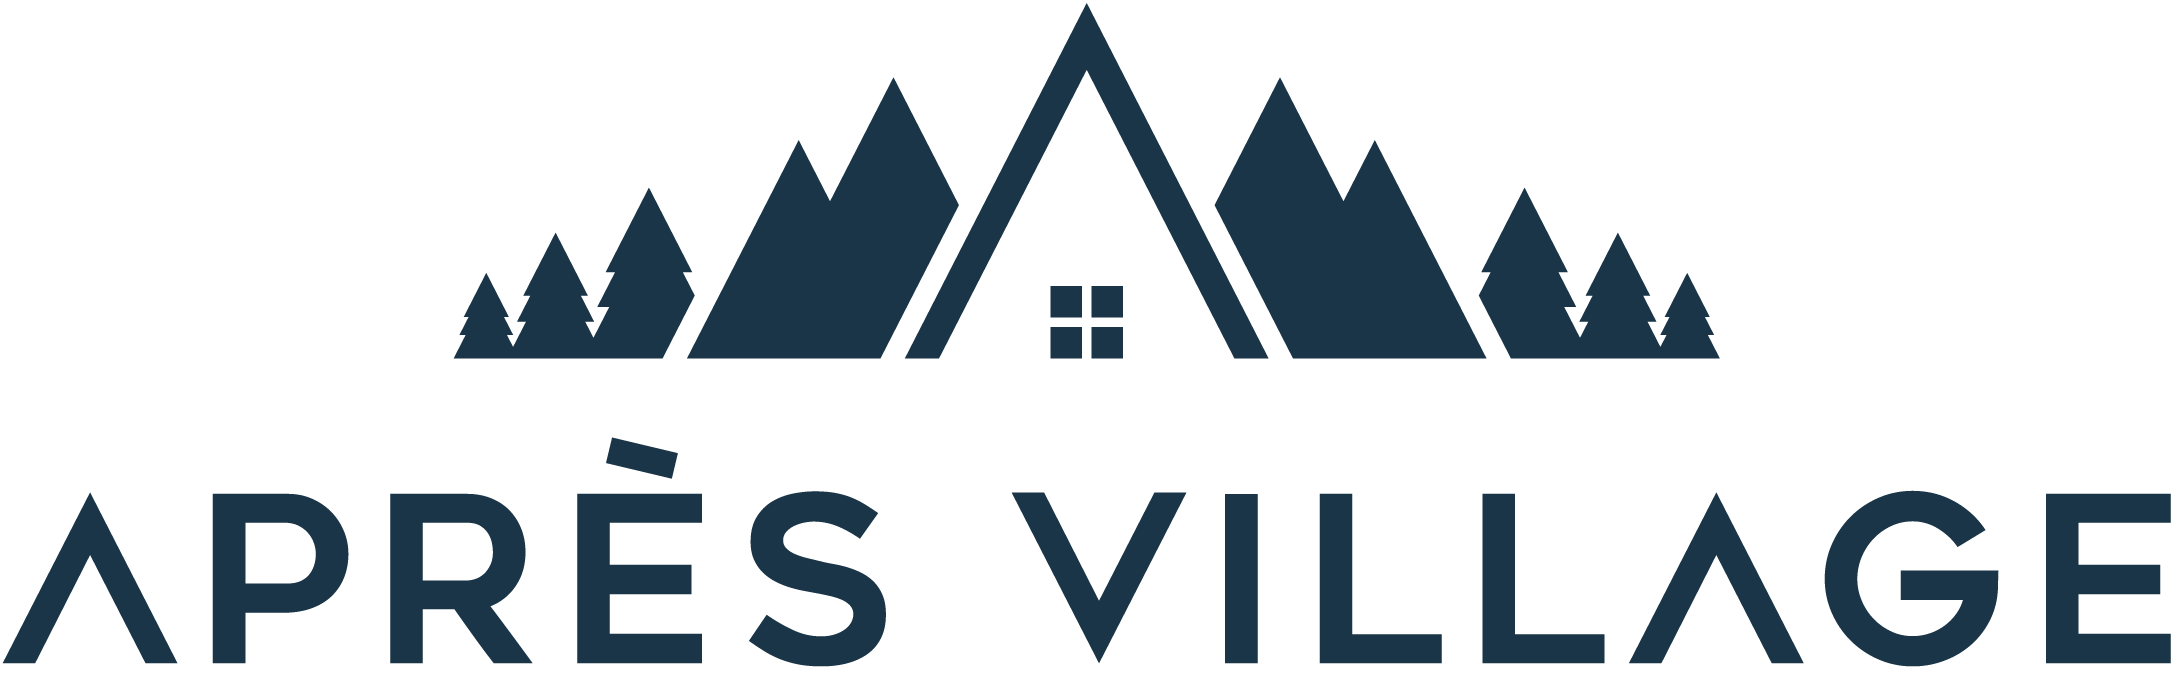 Après Village logo